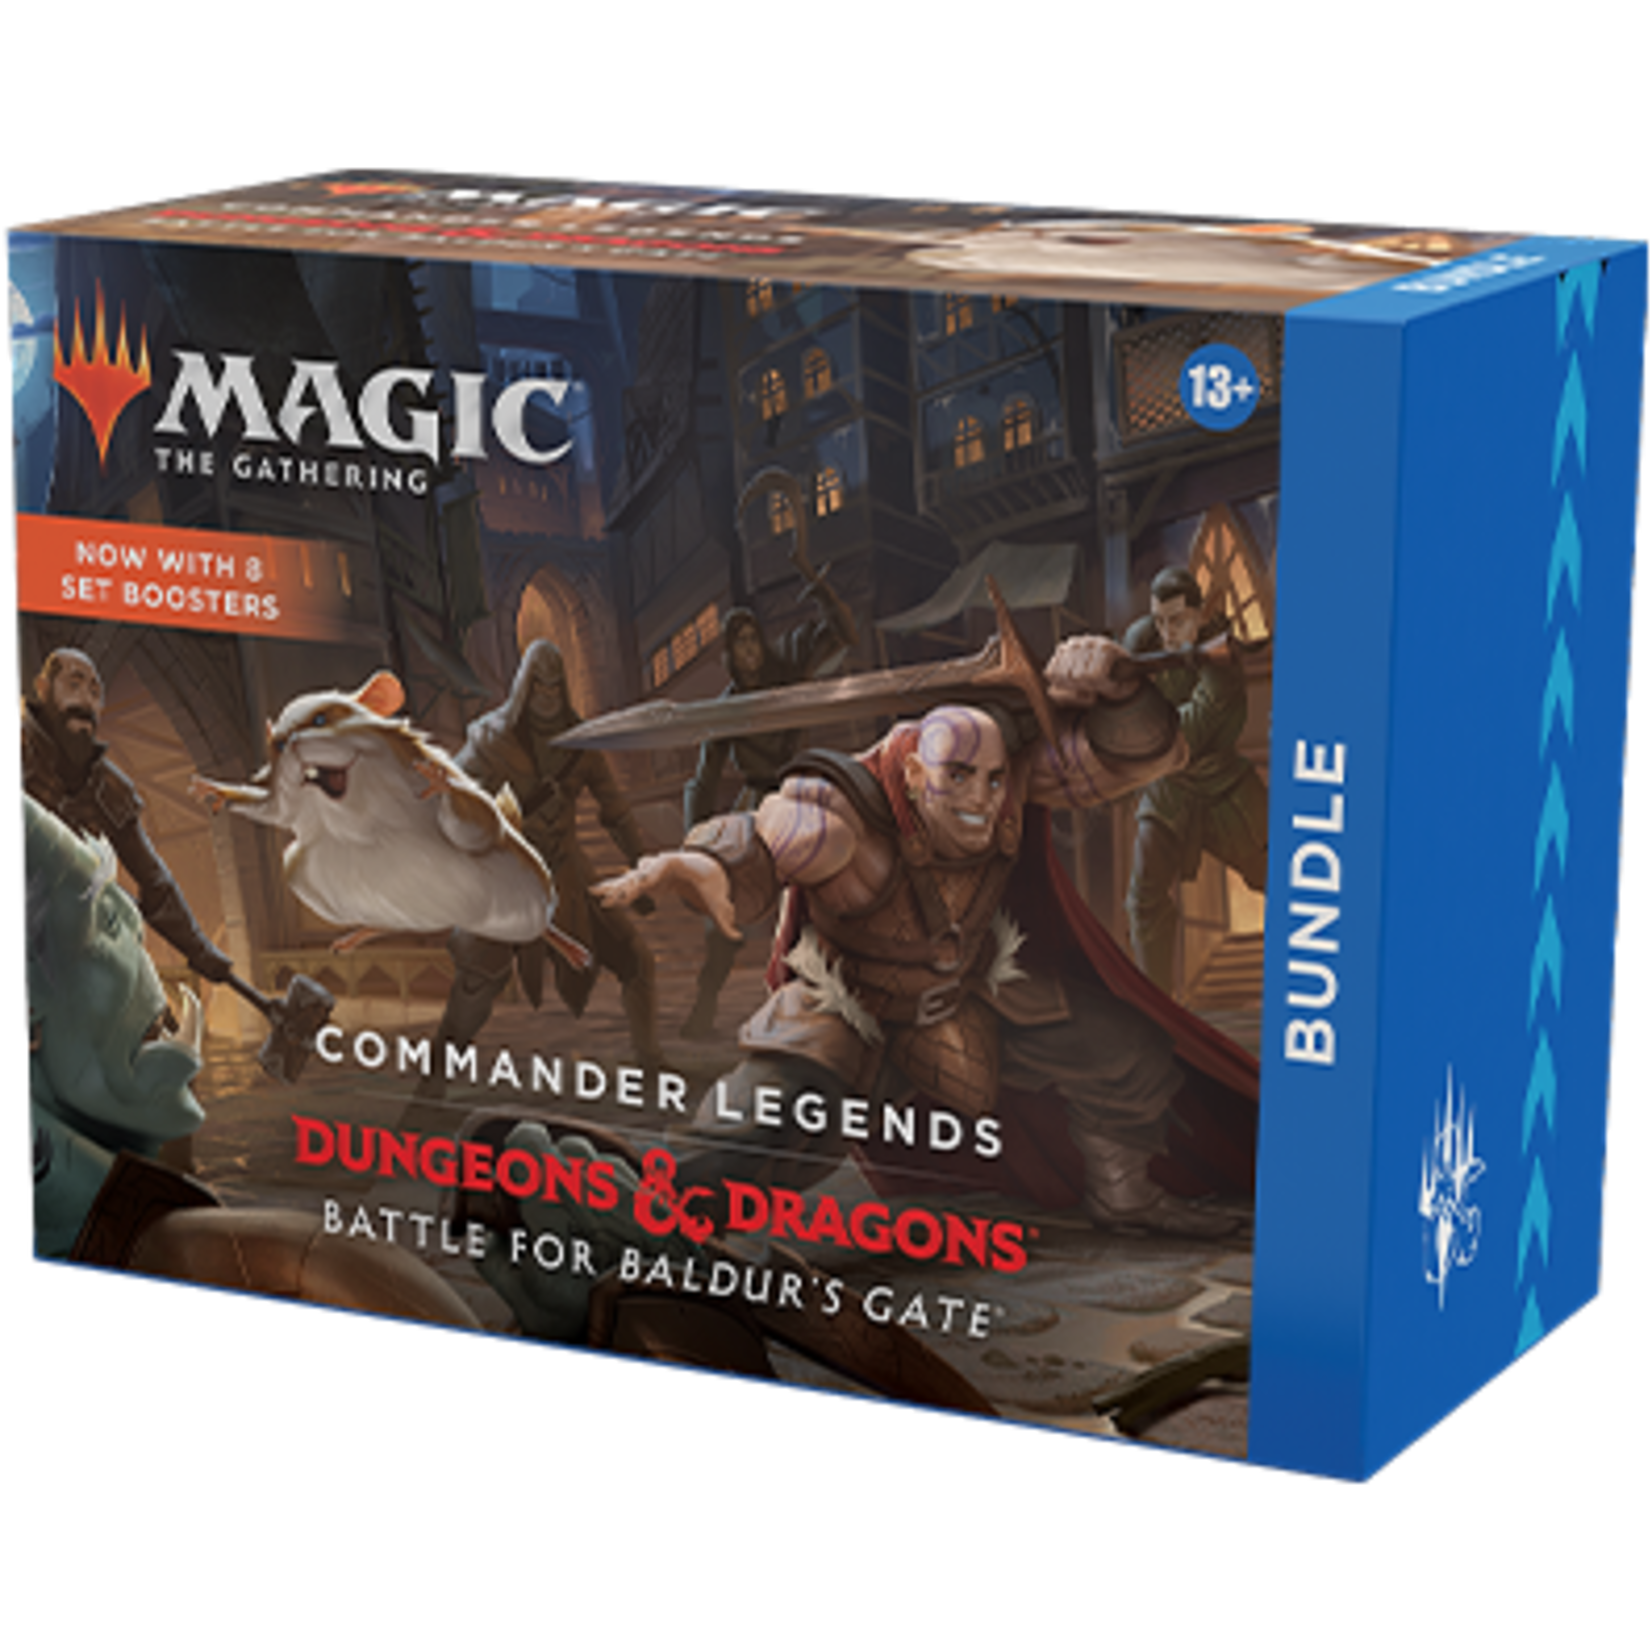 Magic: The Gathering Magic: The Gathering – Commander Legends: Battle for Baldur’s Gate Bundle